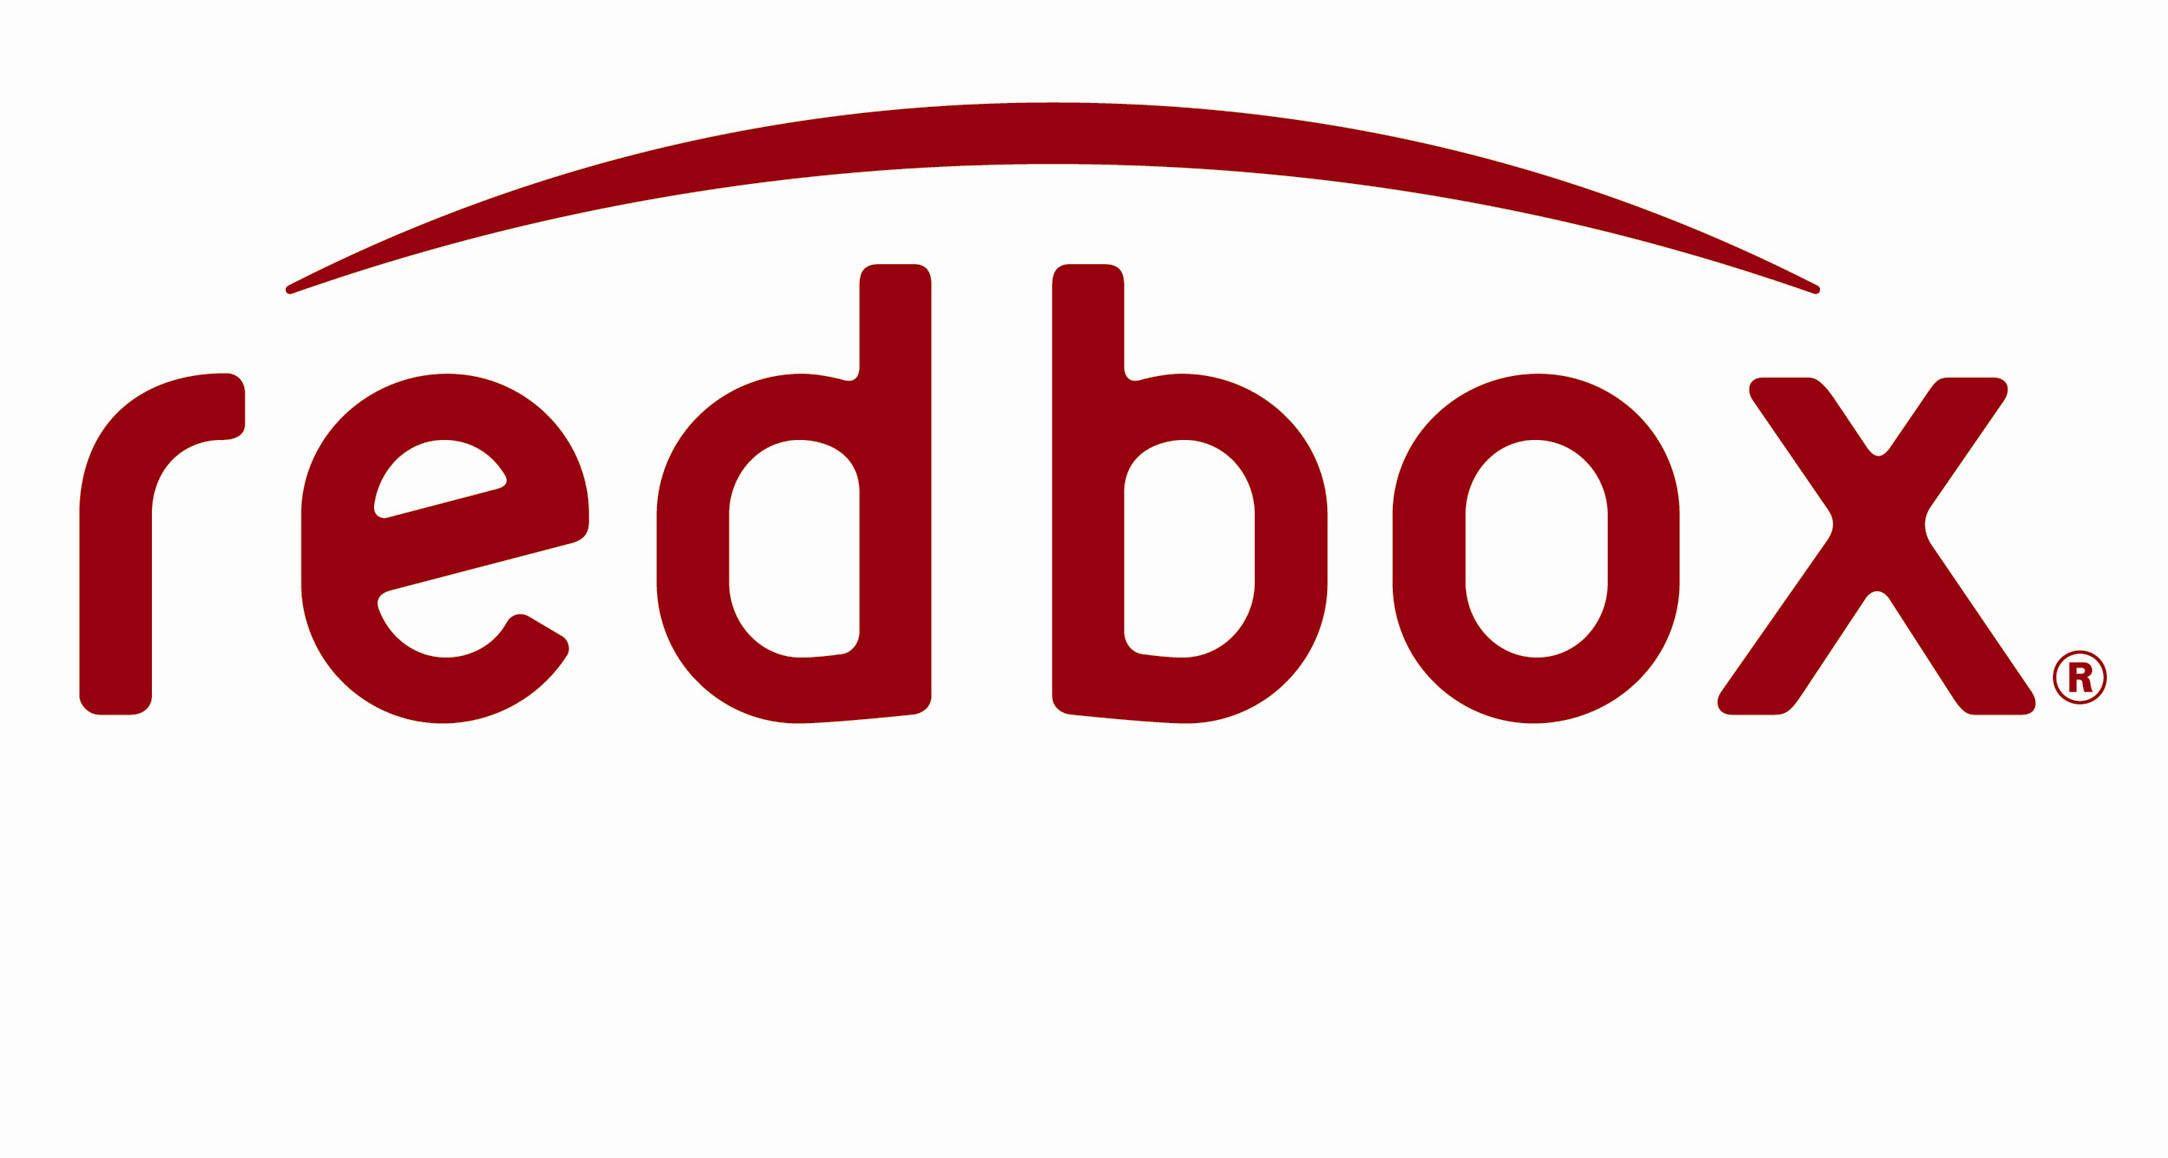 DVD Rental Logo - FREE 1 Night DVD Rental At RedBox